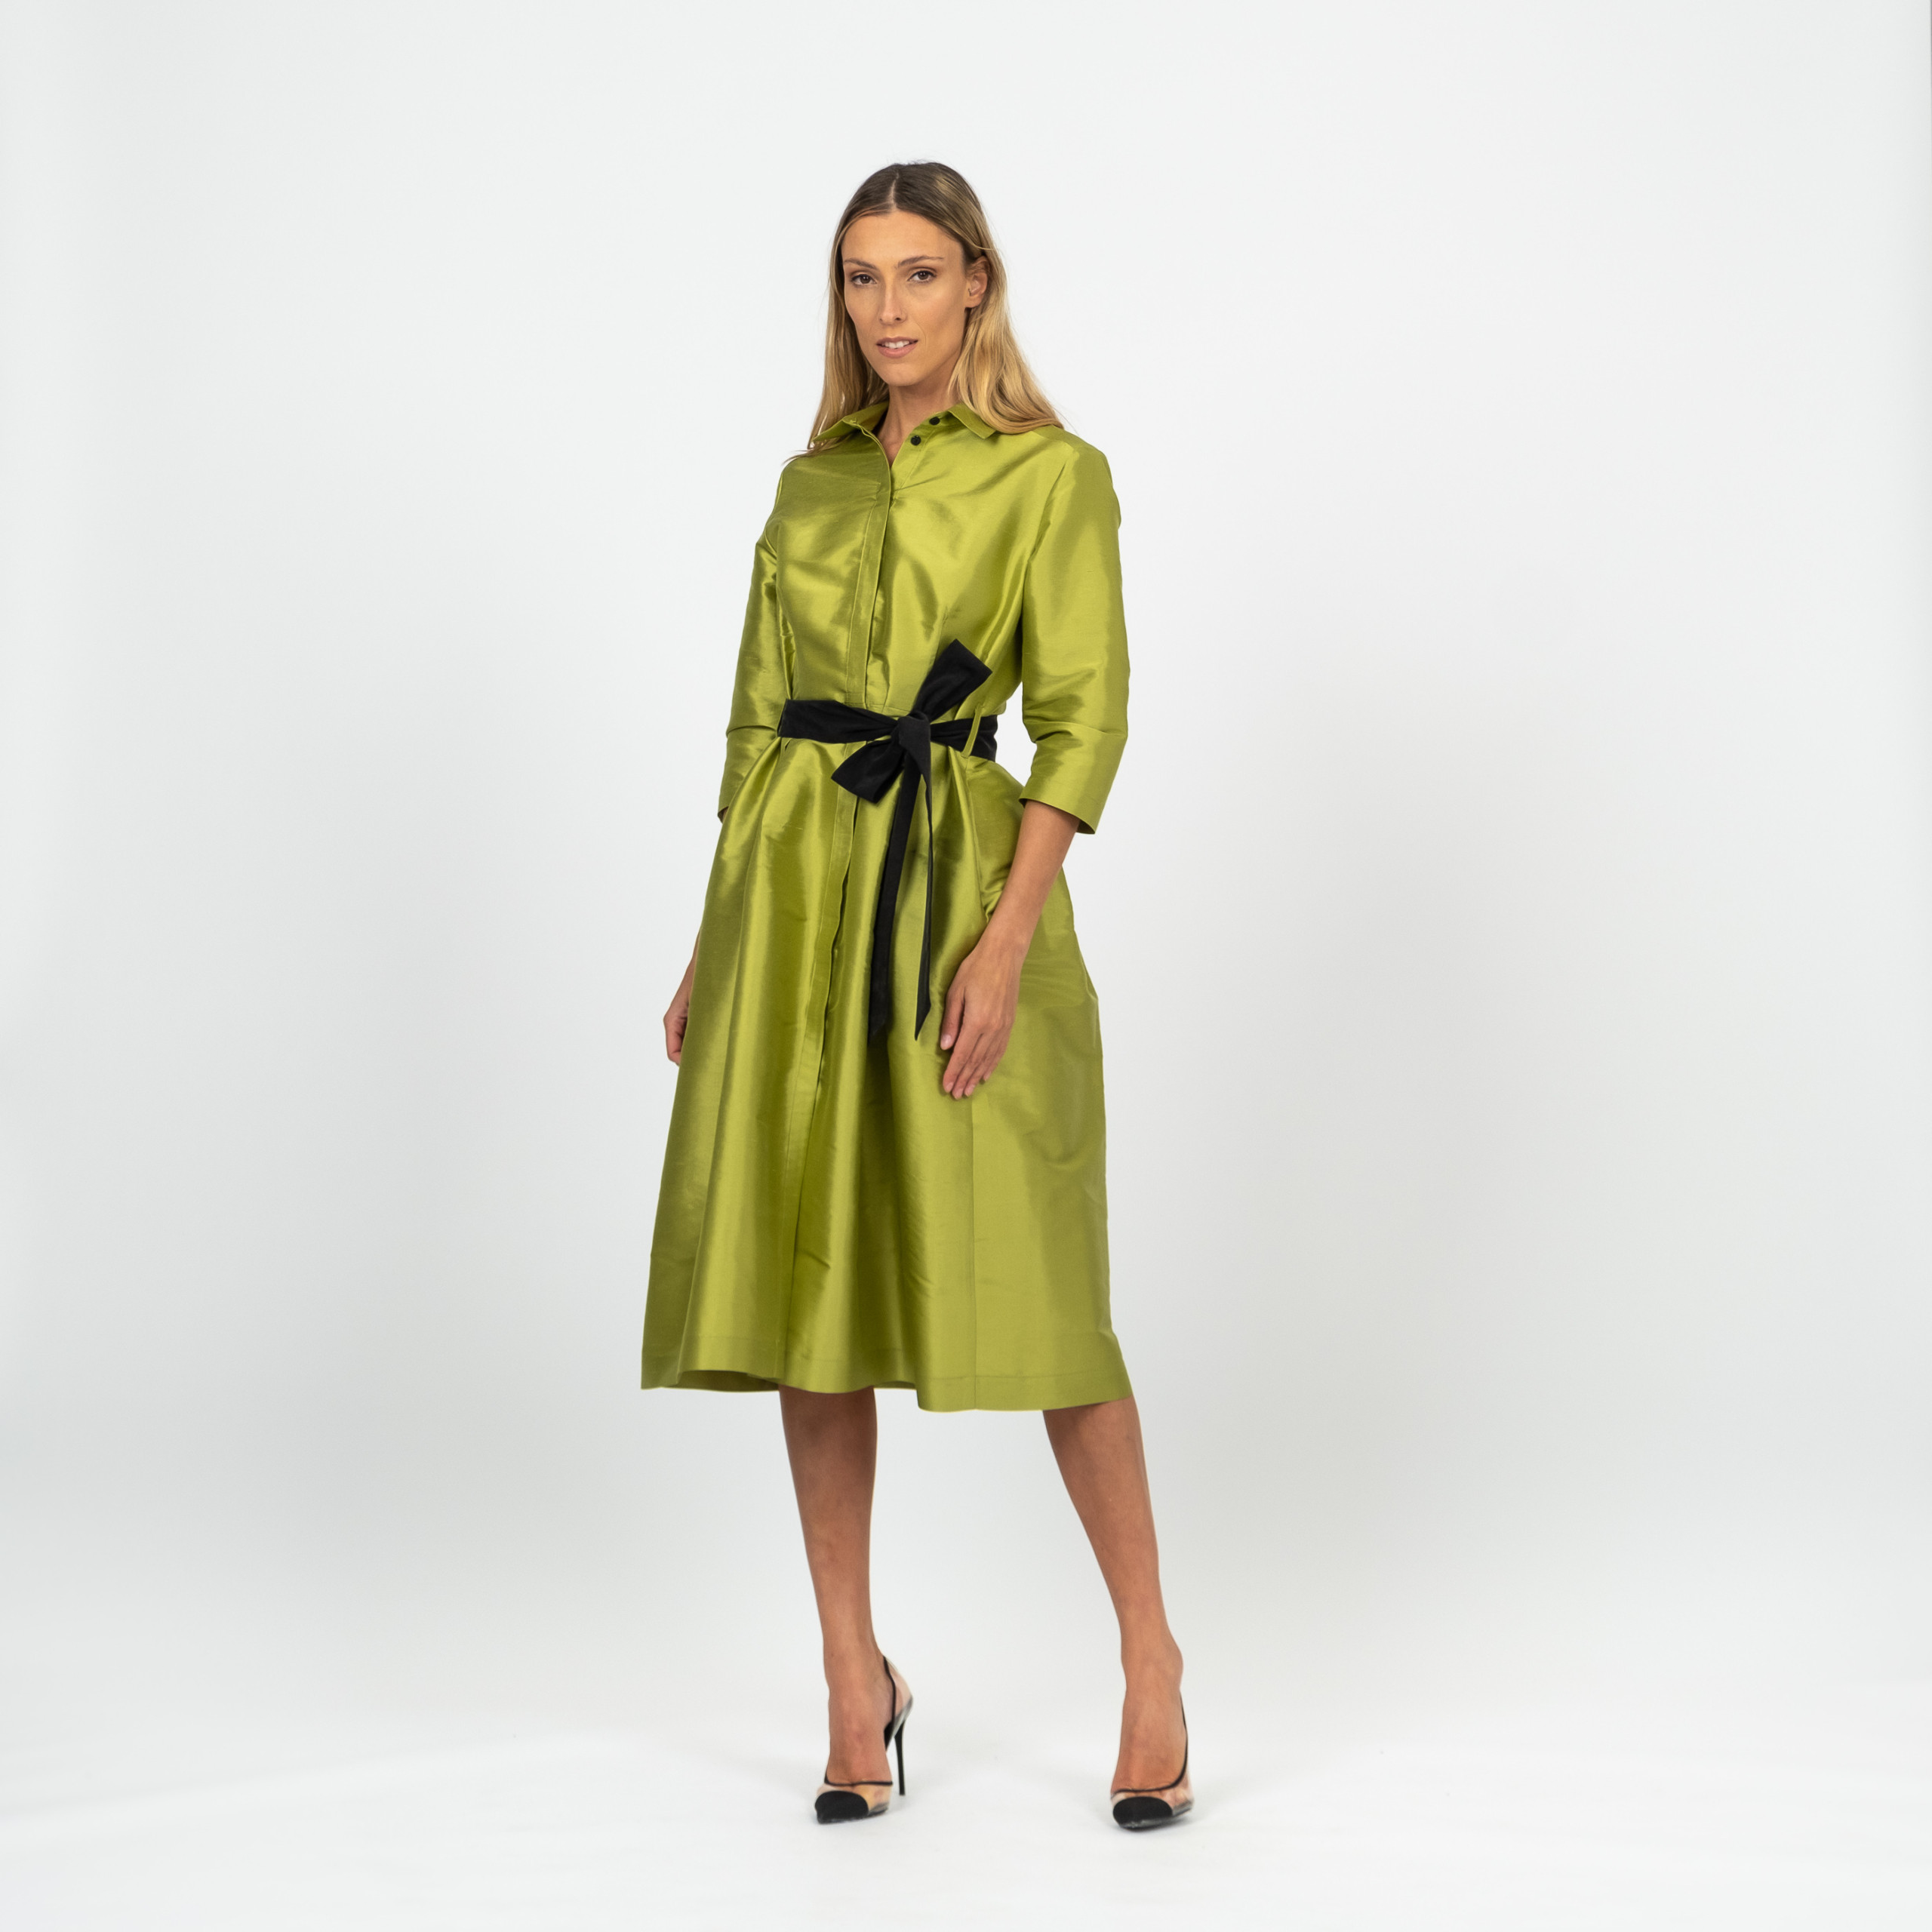 HELENA roheline toorsiidist kleit
 349€